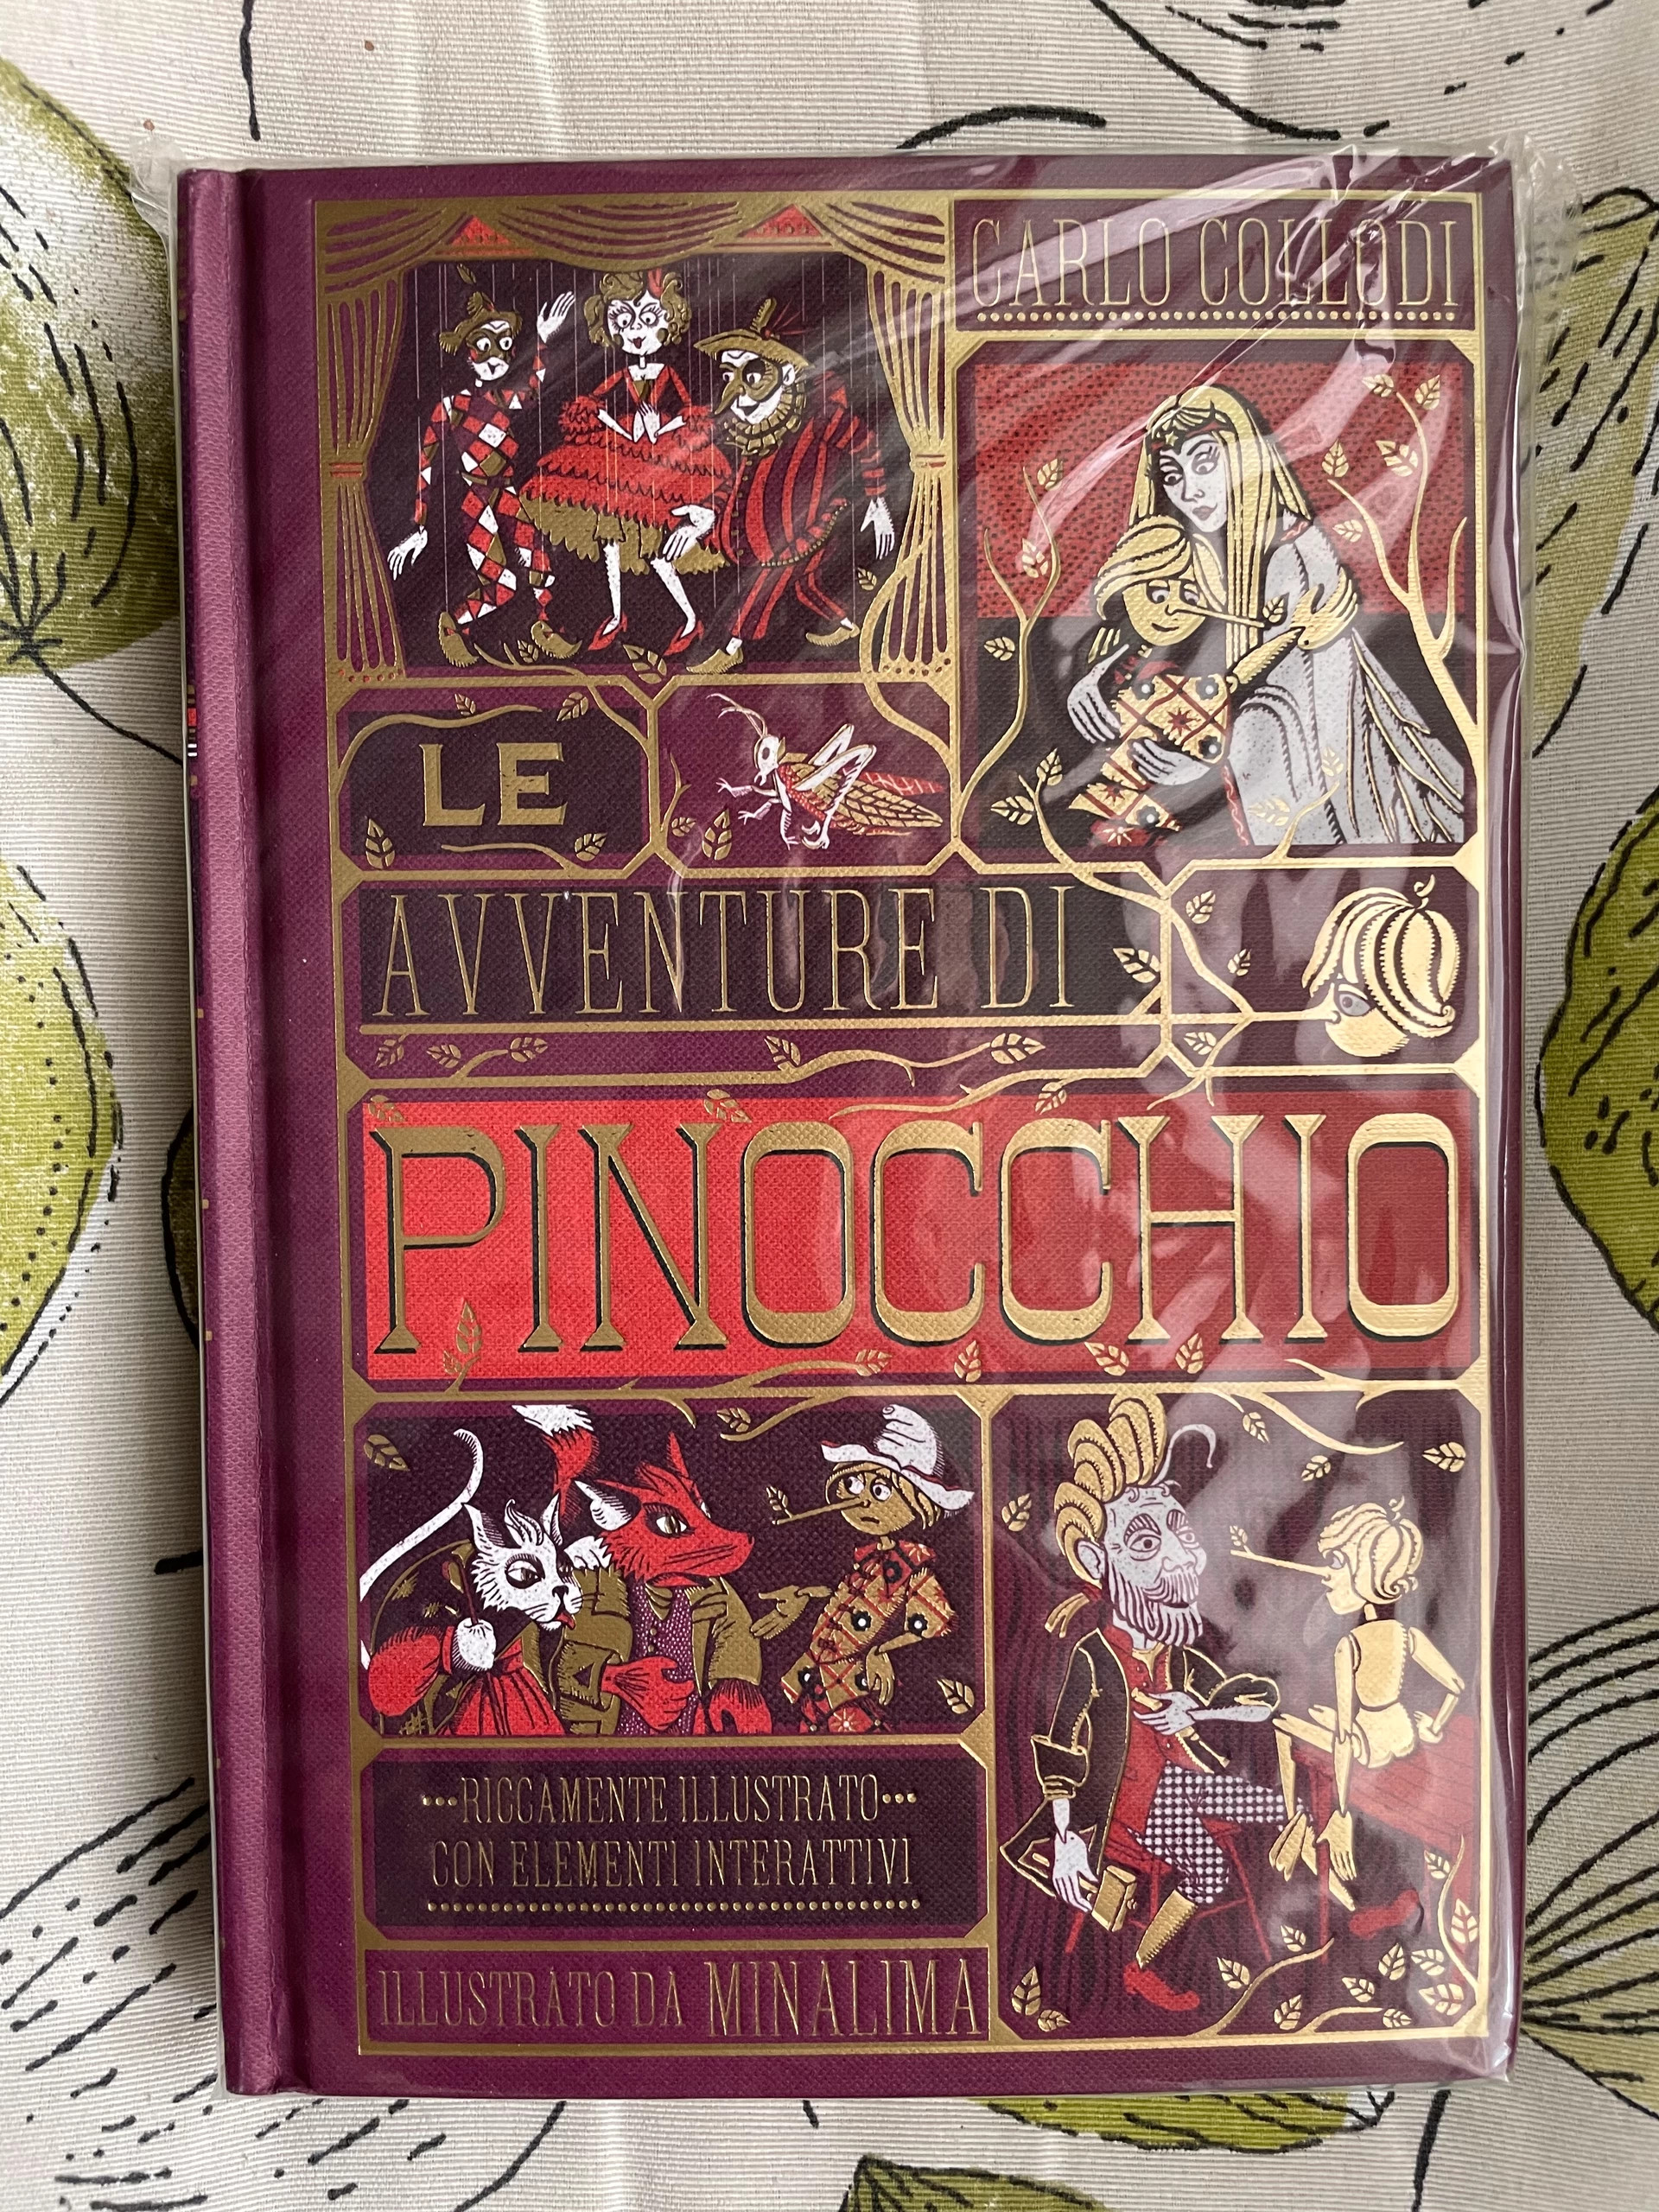 Le avventure di Pinocchio - L'ippocampo Edizioni